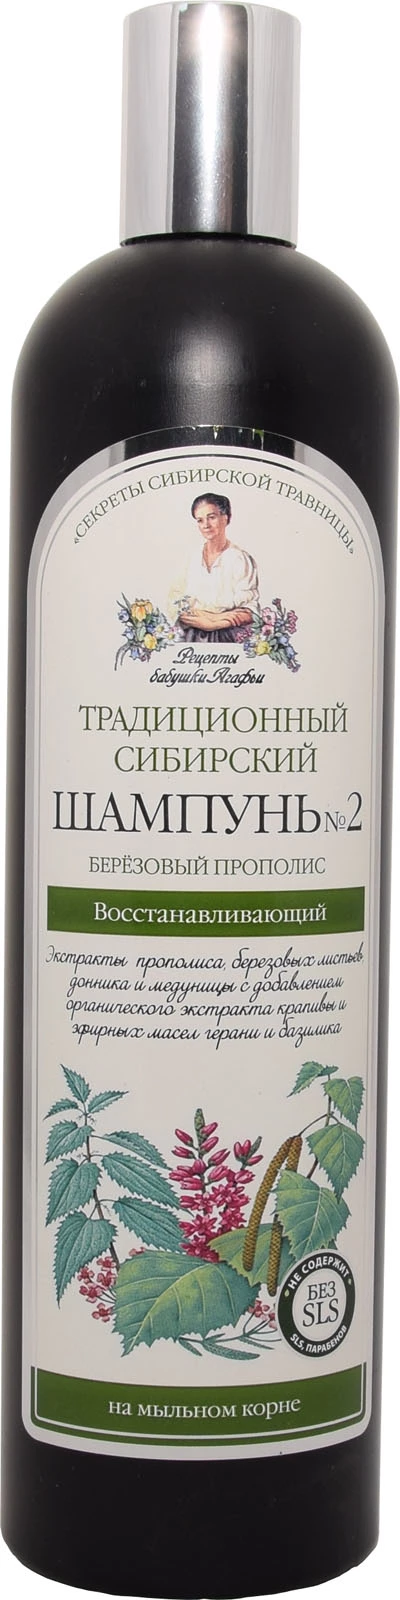 tradycyjny syberyjski szampon nr 2